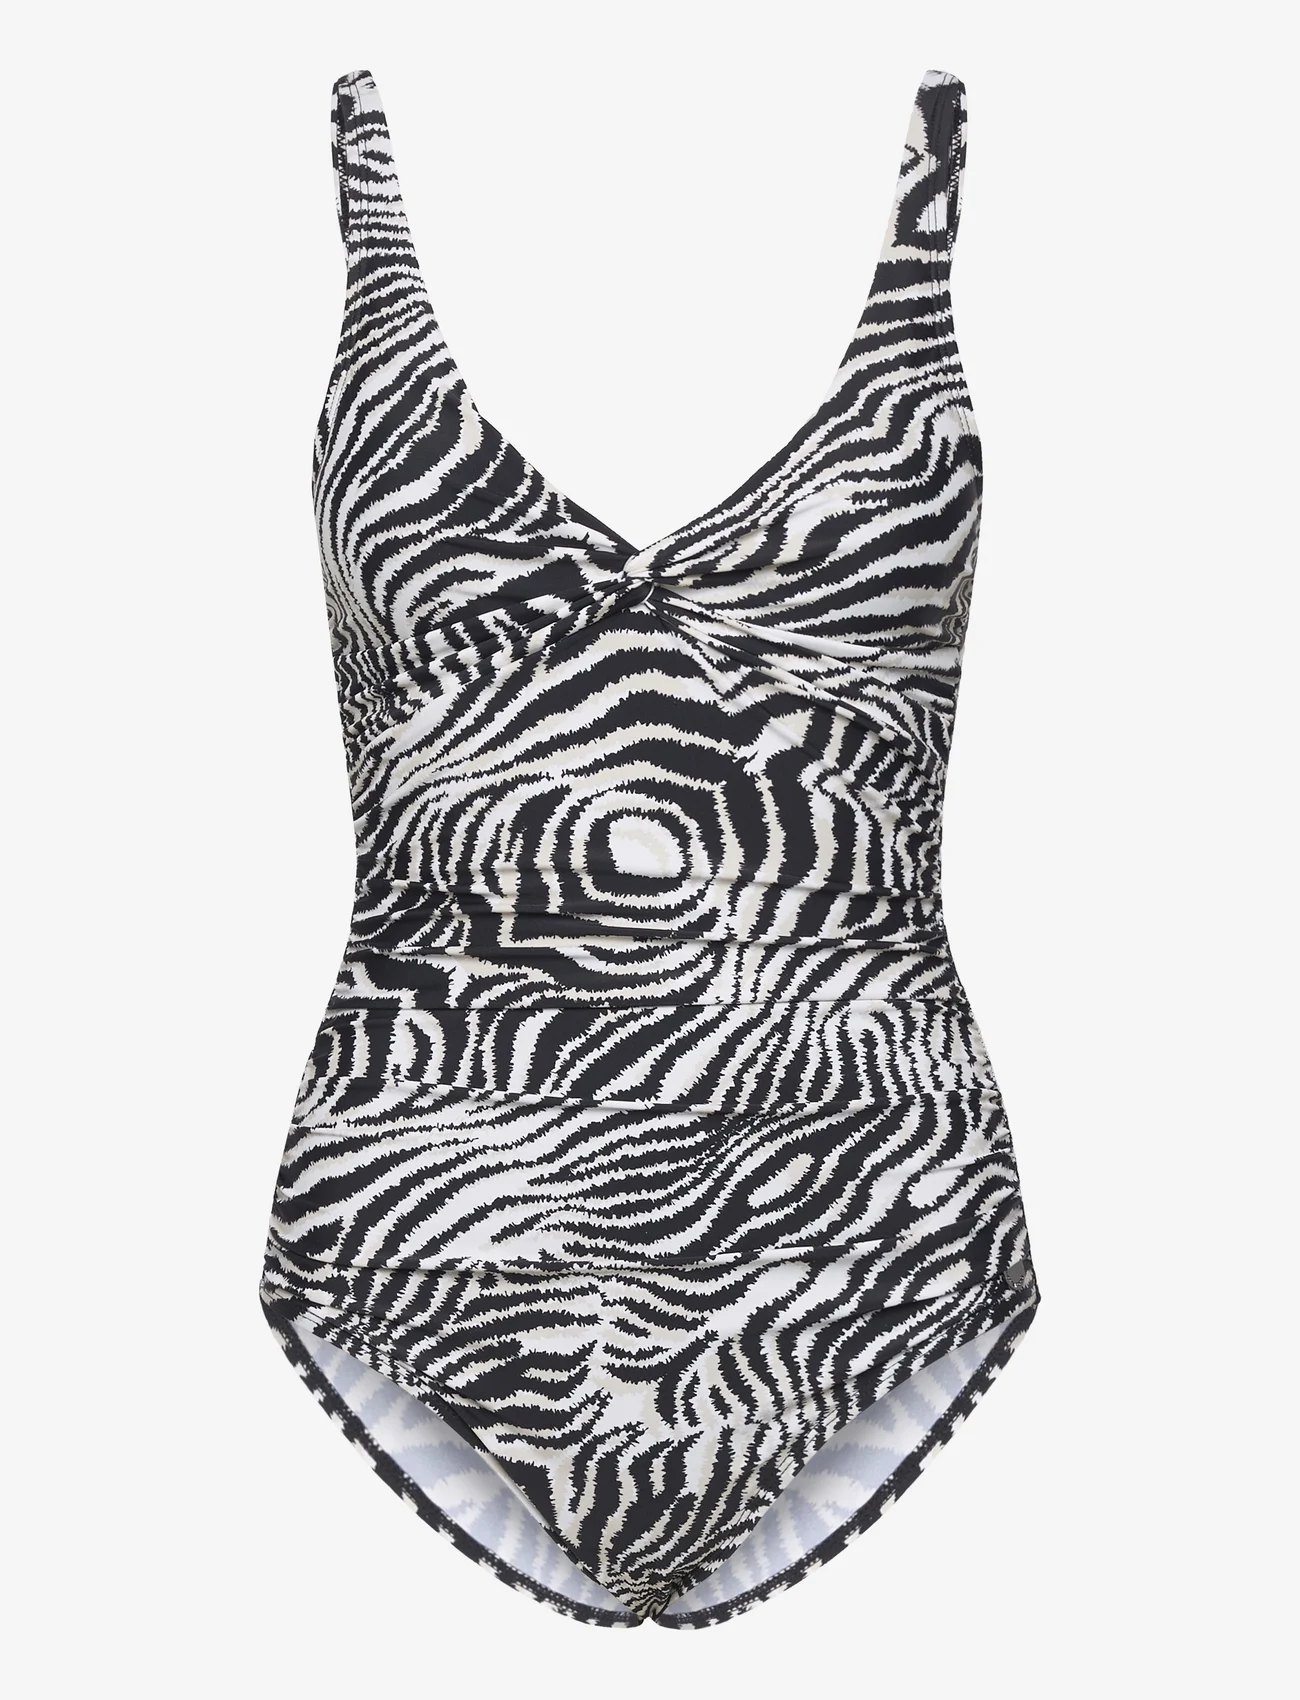 Panos Emporio - Zebra Simi Swimsuit - badeanzüge - offwhite/black - 0